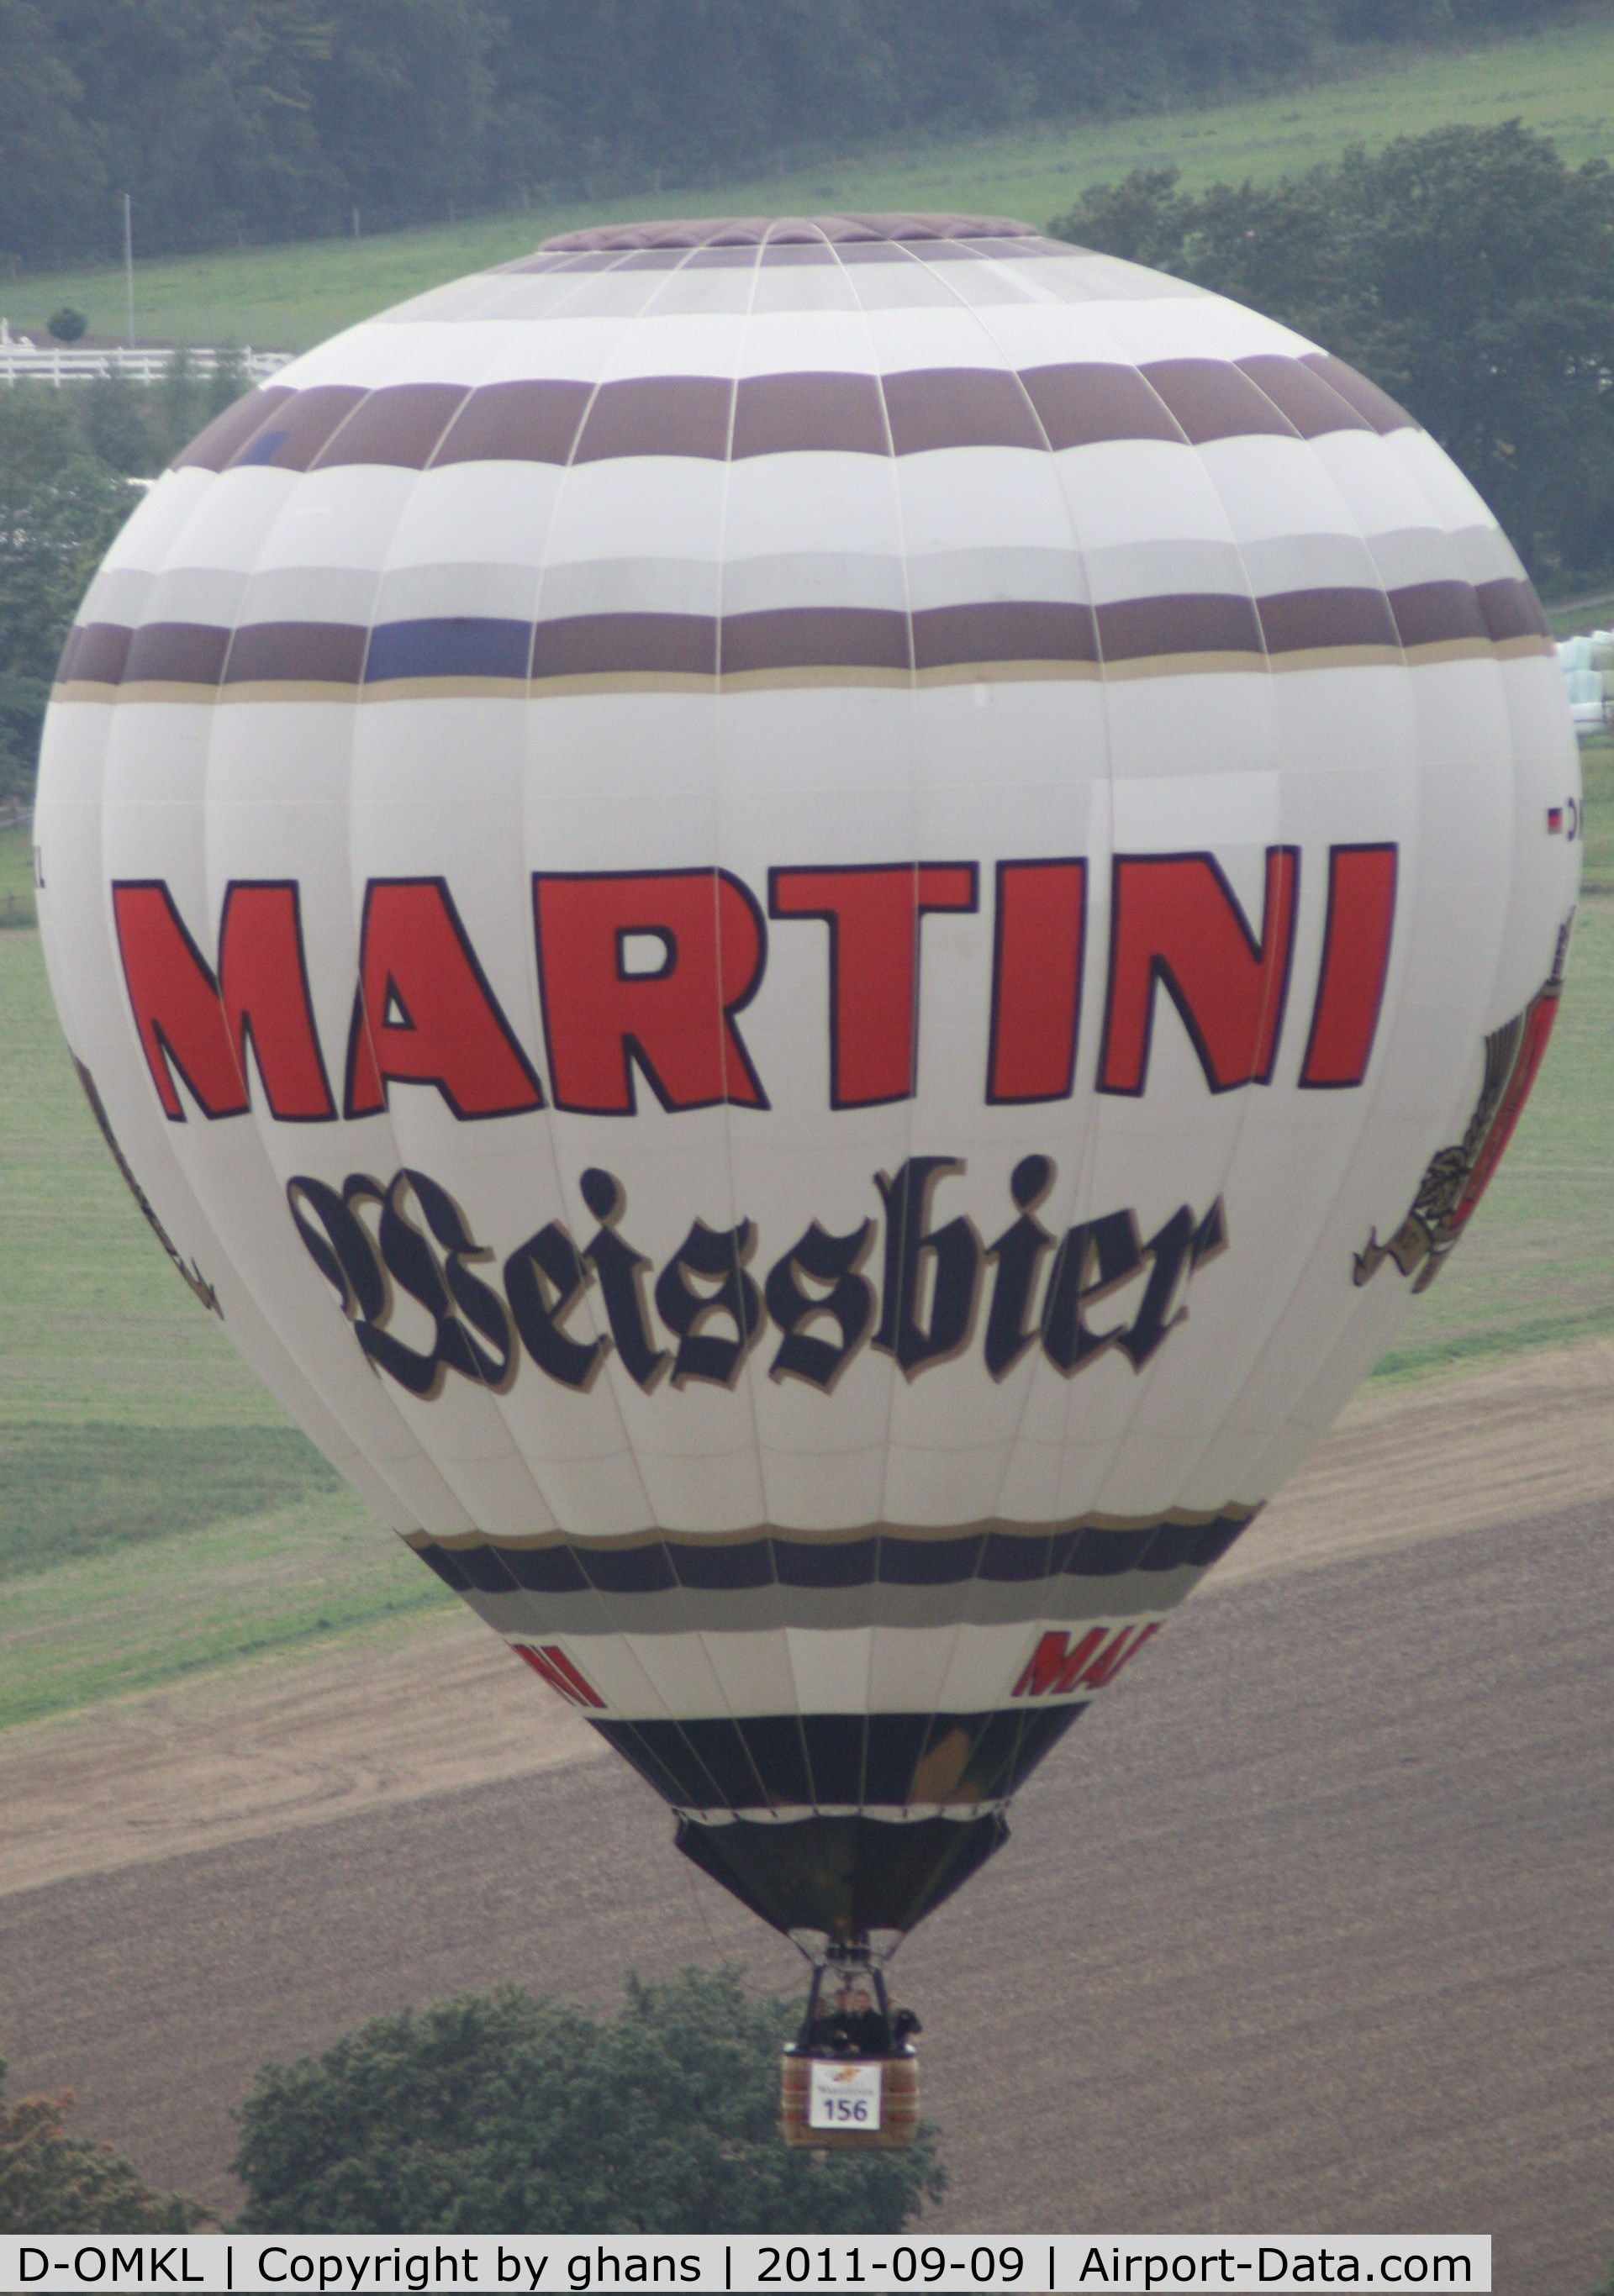 D-OMKL, 1999 Schroeder Fire Balloons G30/24 C/N 764, WIM 2011
'Martini Weissbier'